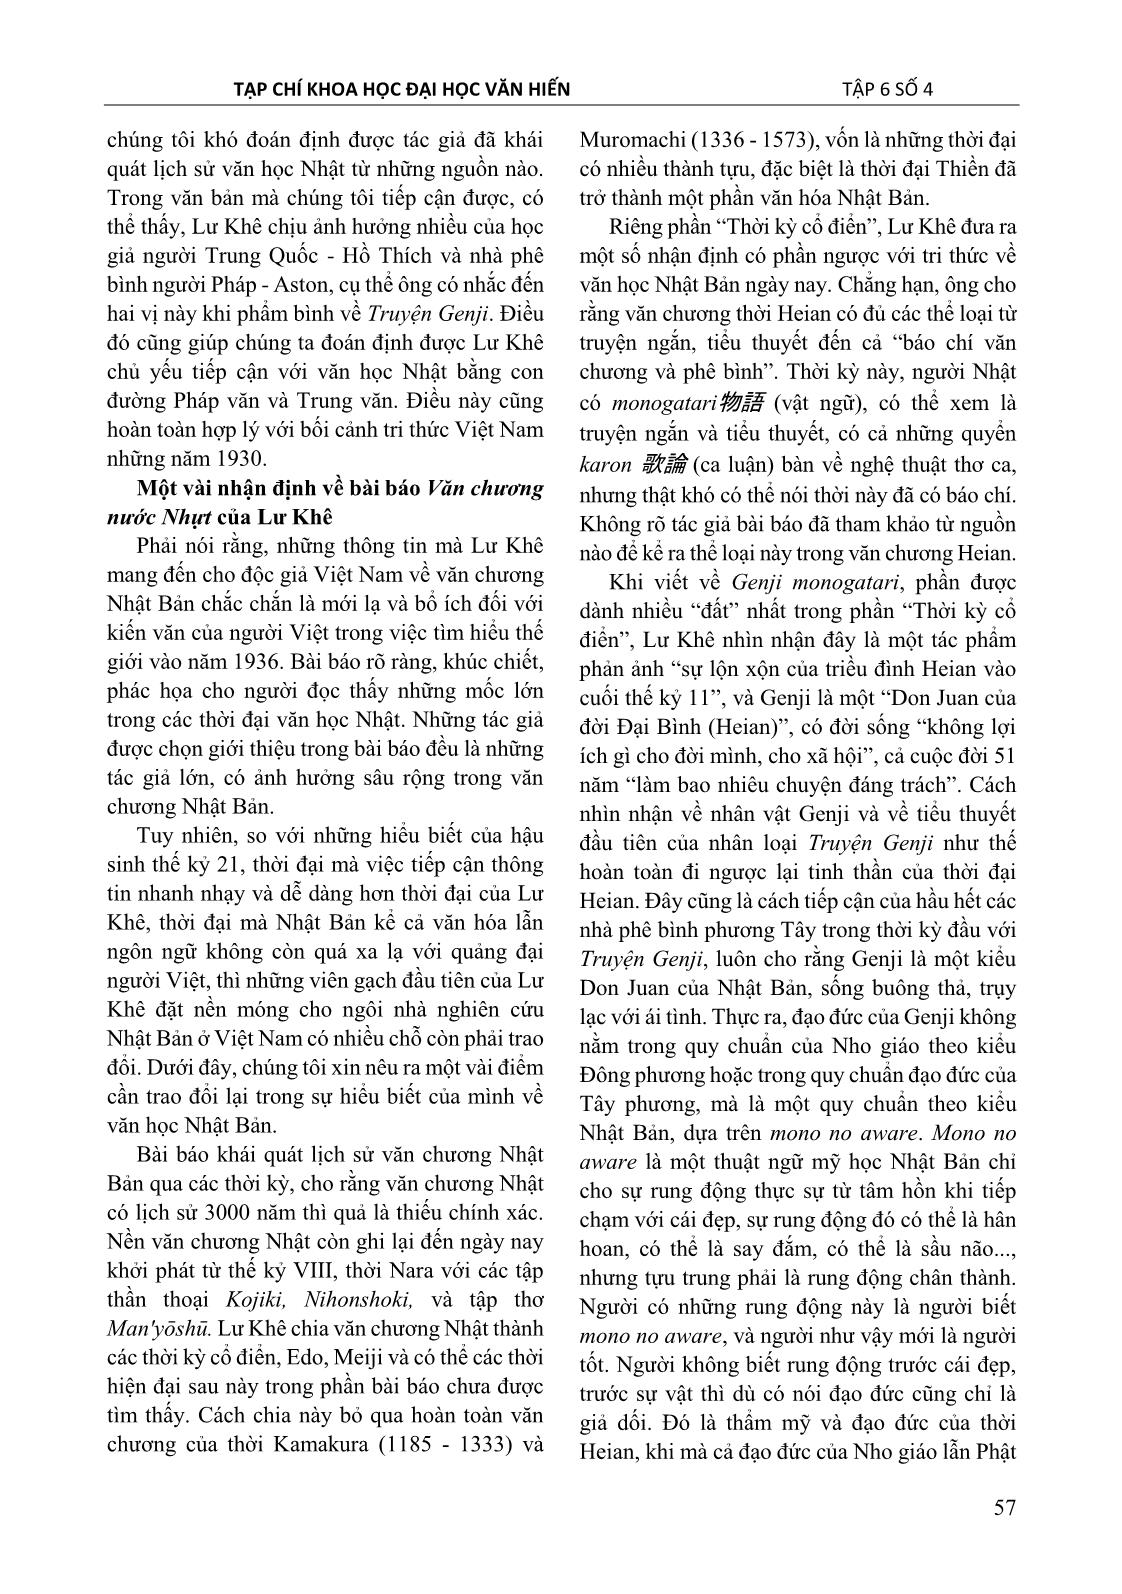 Lư Khê và bài báo đầu tiên ở nam kỳ giới thiệu văn học Nhật Bản trang 5